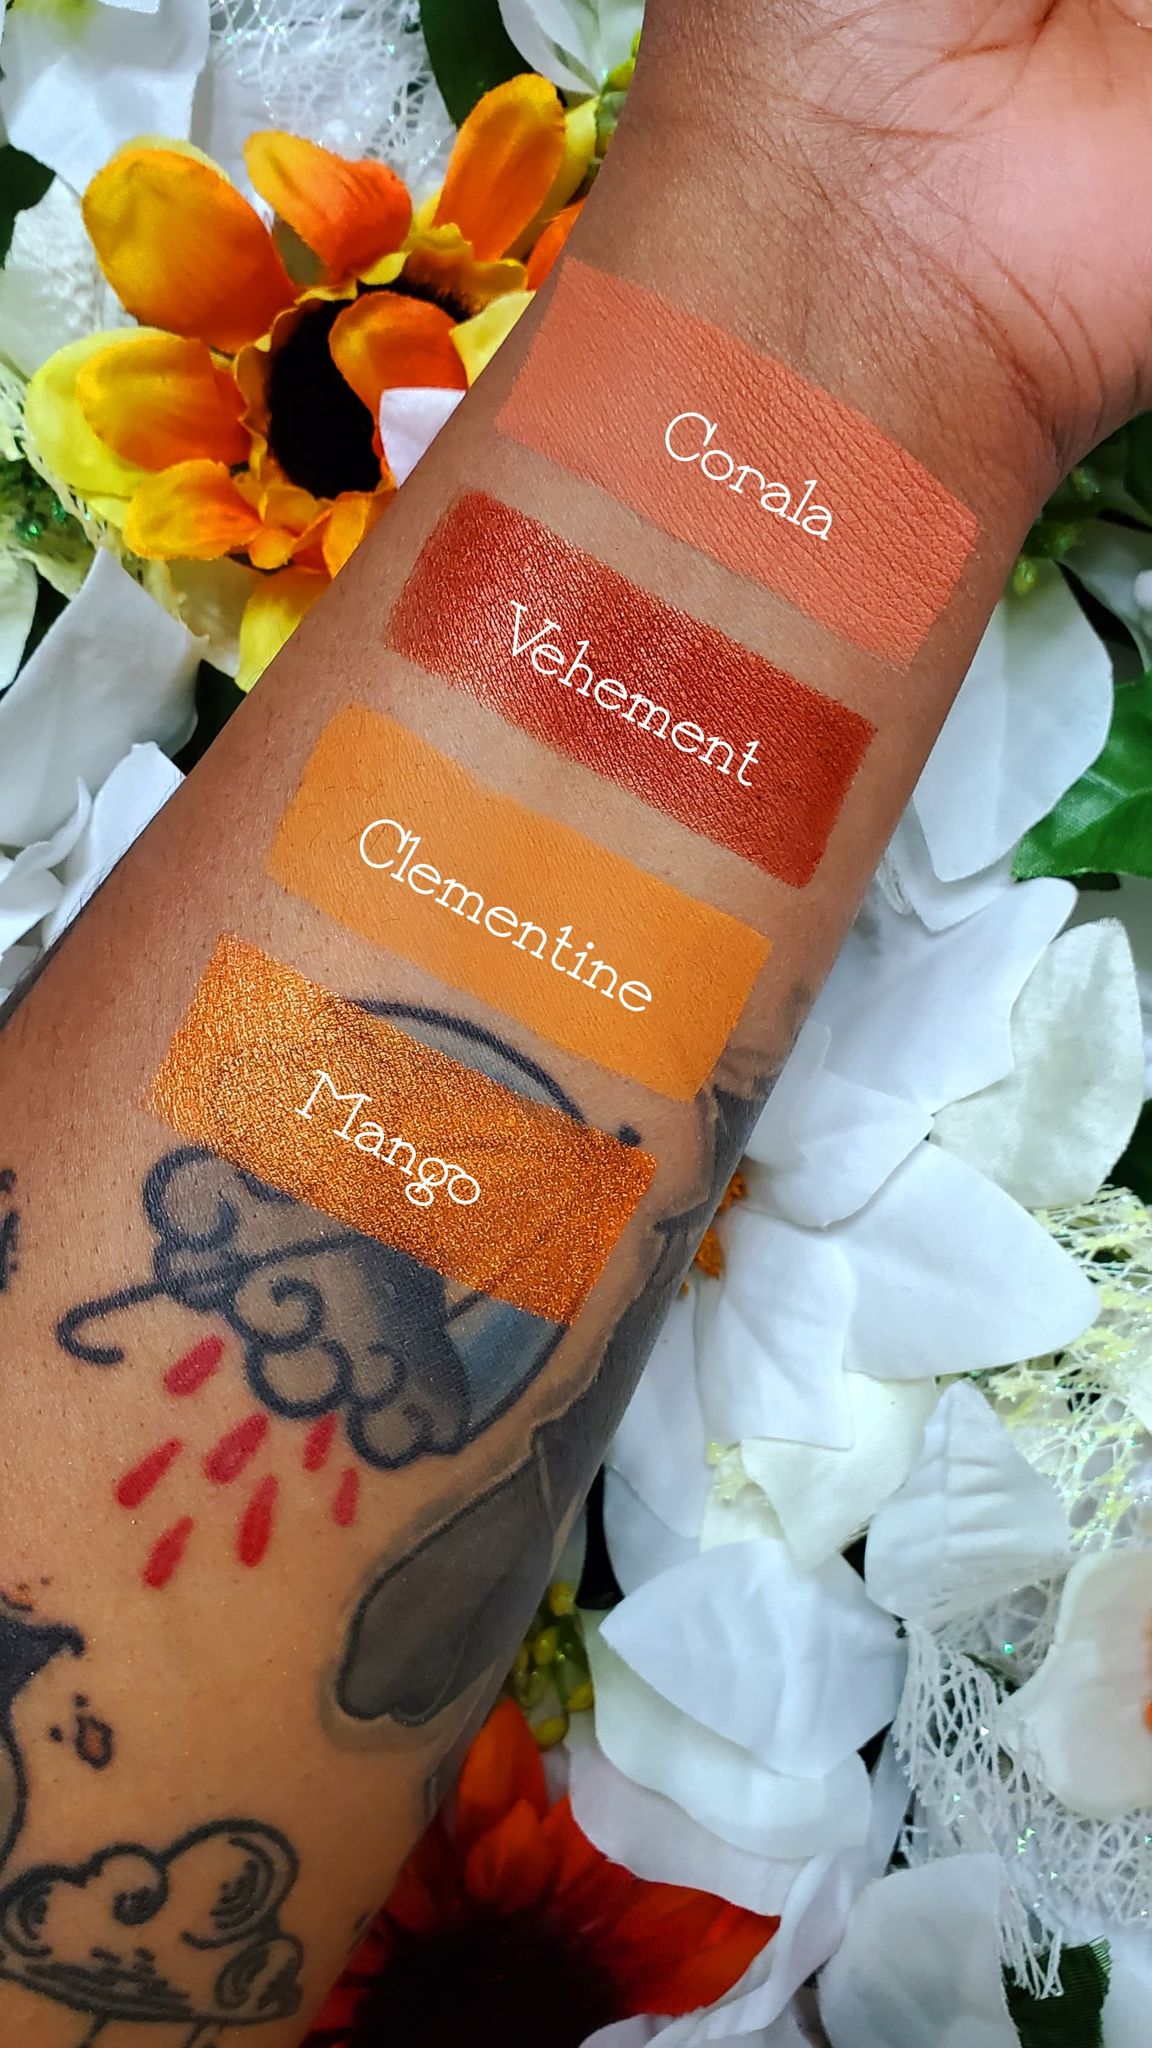 Clementine - Eyeshadow Matte Orange